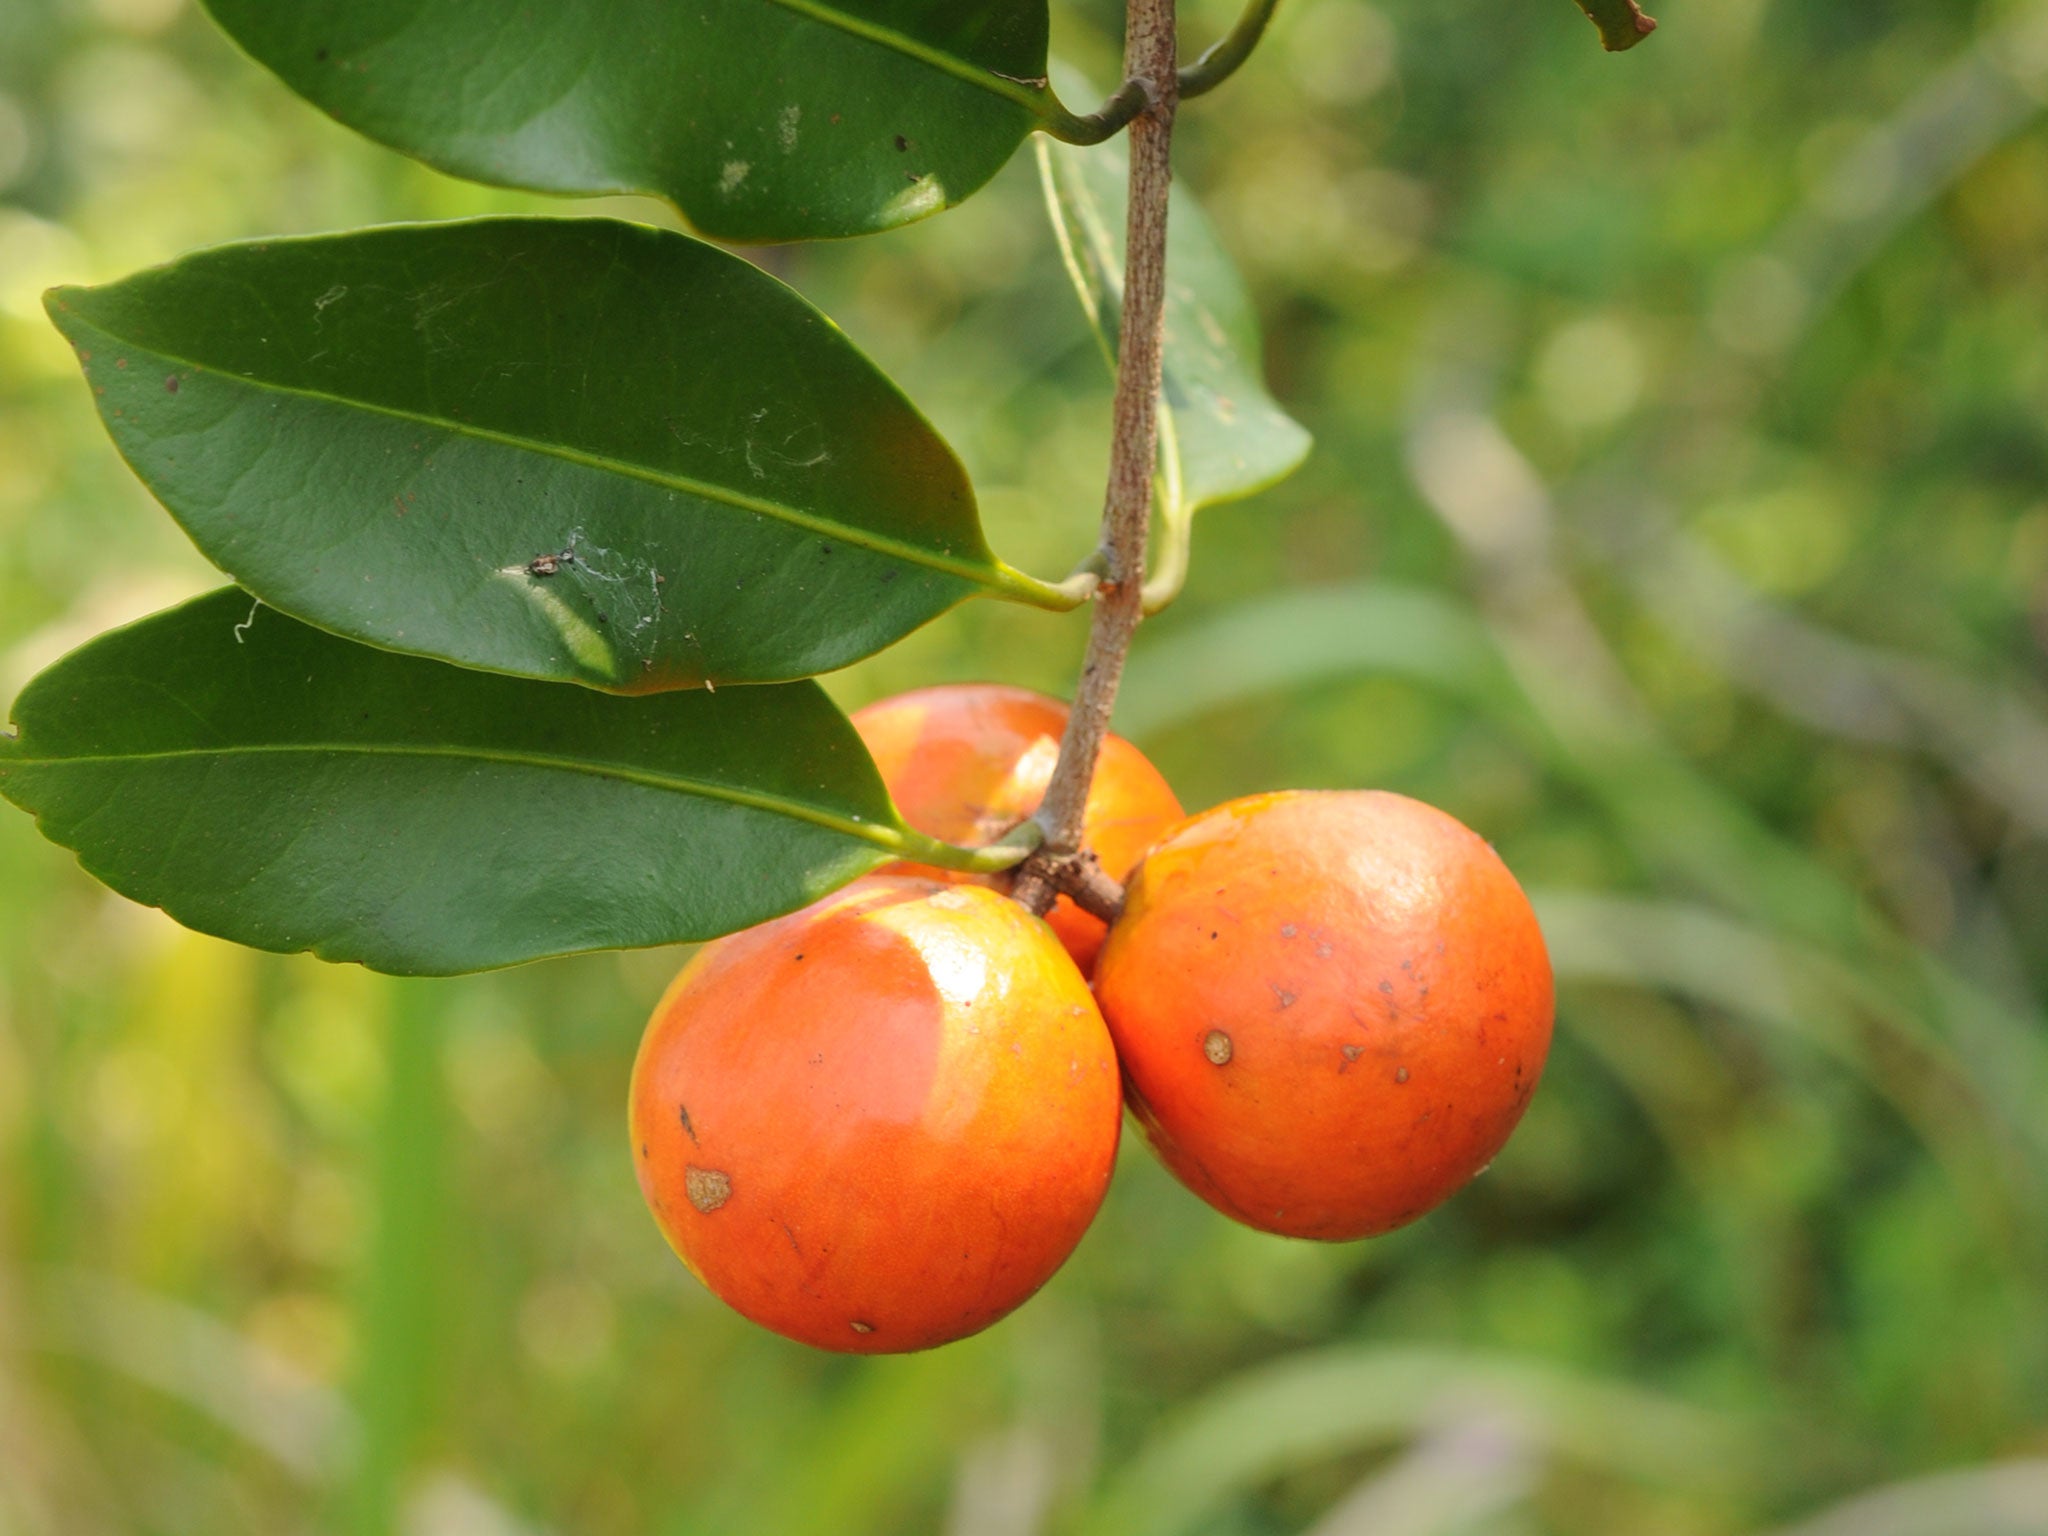 Salacia arenicola, a climbing shrub from Republic of Congo